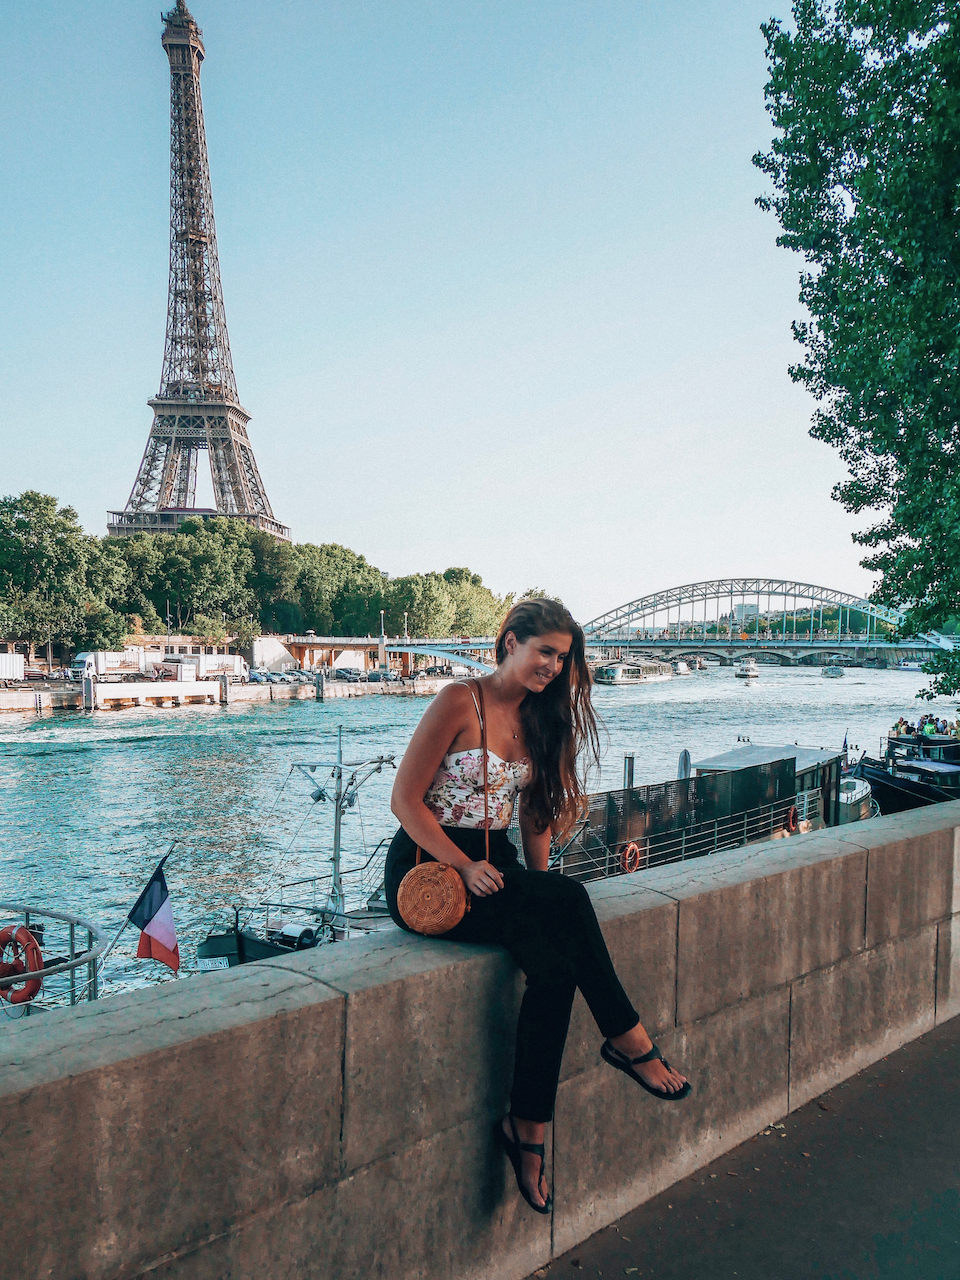 La tour Eiffel et la passerelle Debilly - Paris - France